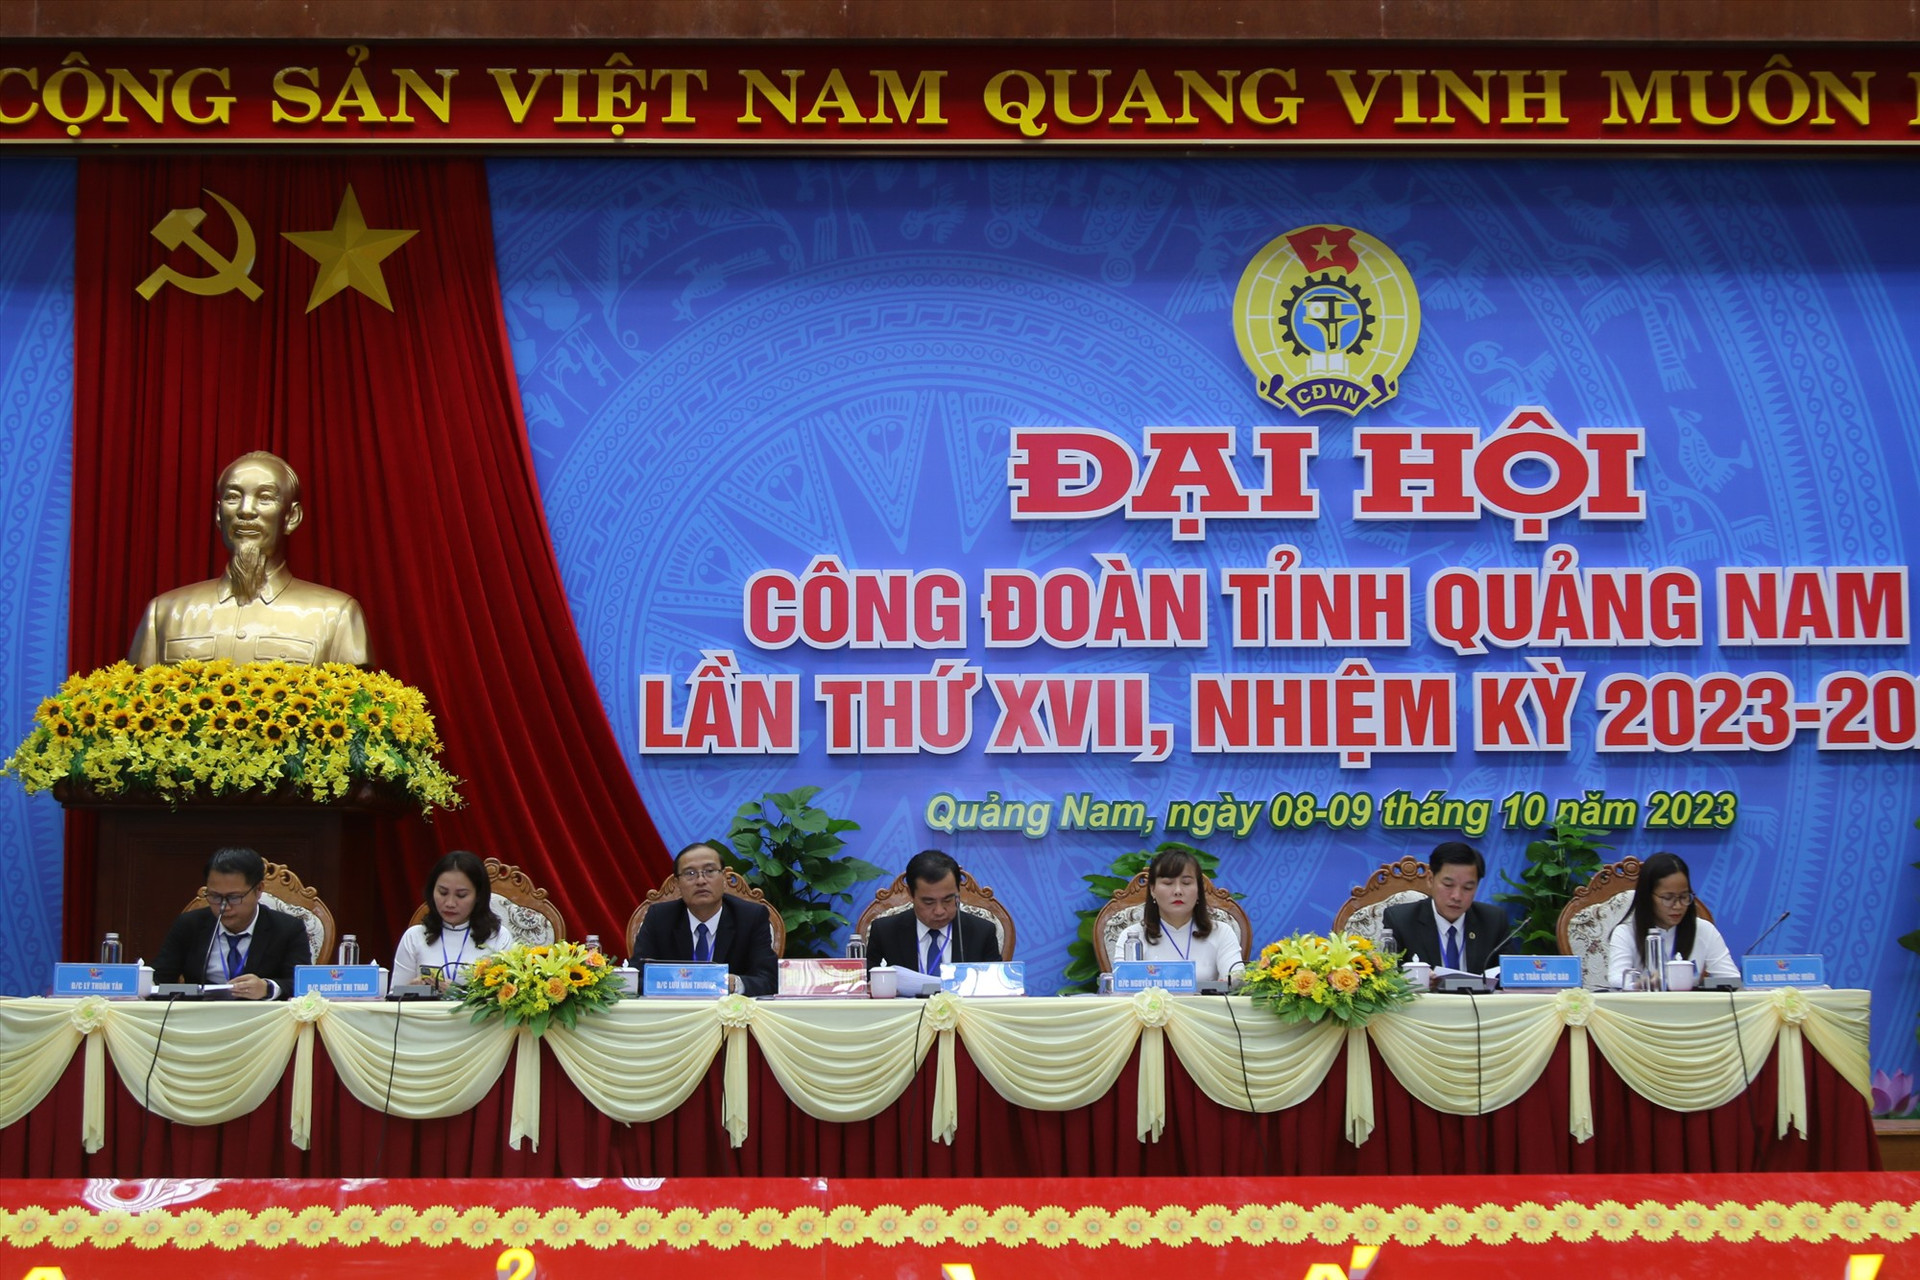 Đoàn Chủ tịch Đại hội Công đoàn tỉnh Quảng Nam lần thứ XVII có 7 đồng chí. Ảnh: D.L